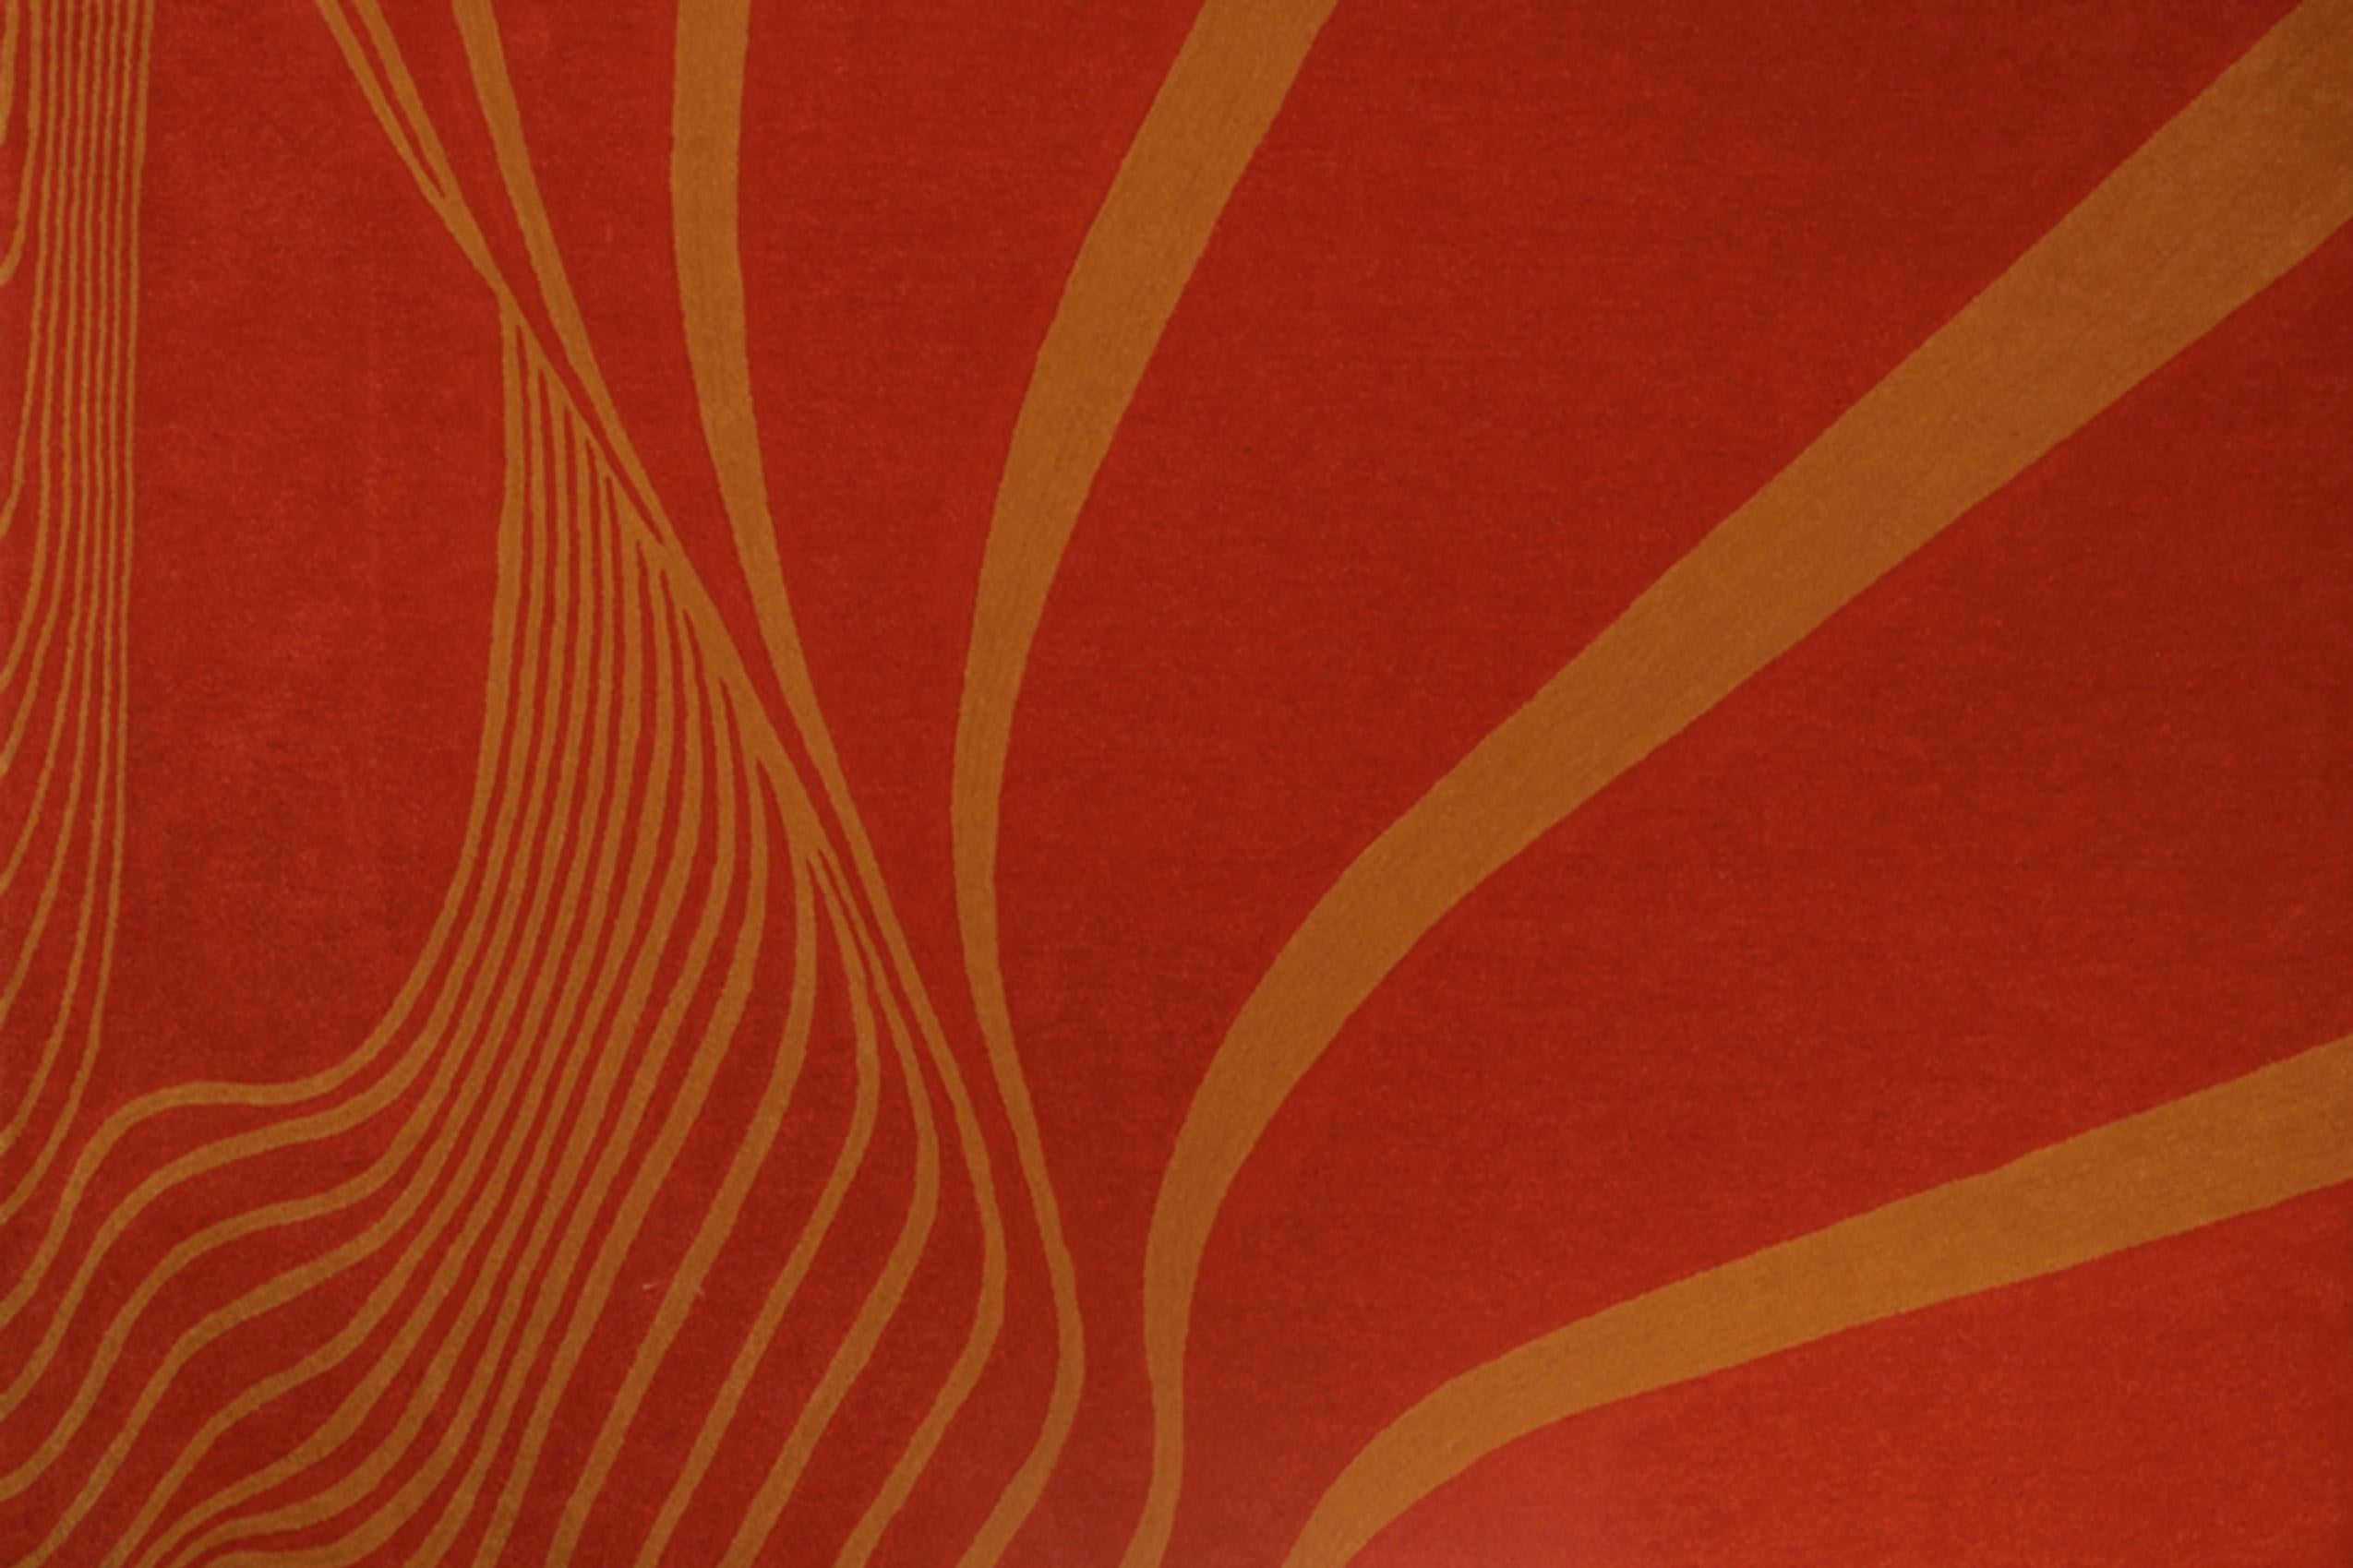 Der Alvorada-Teppich wurde von Oscar Niemeyer inspiriert. Die Kurven und die Mischung von Texturen verleihen diesem Stück ein einzigartiges Ergebnis und einen besonderen Touch. 

Die Größen sind anpassbar.

.